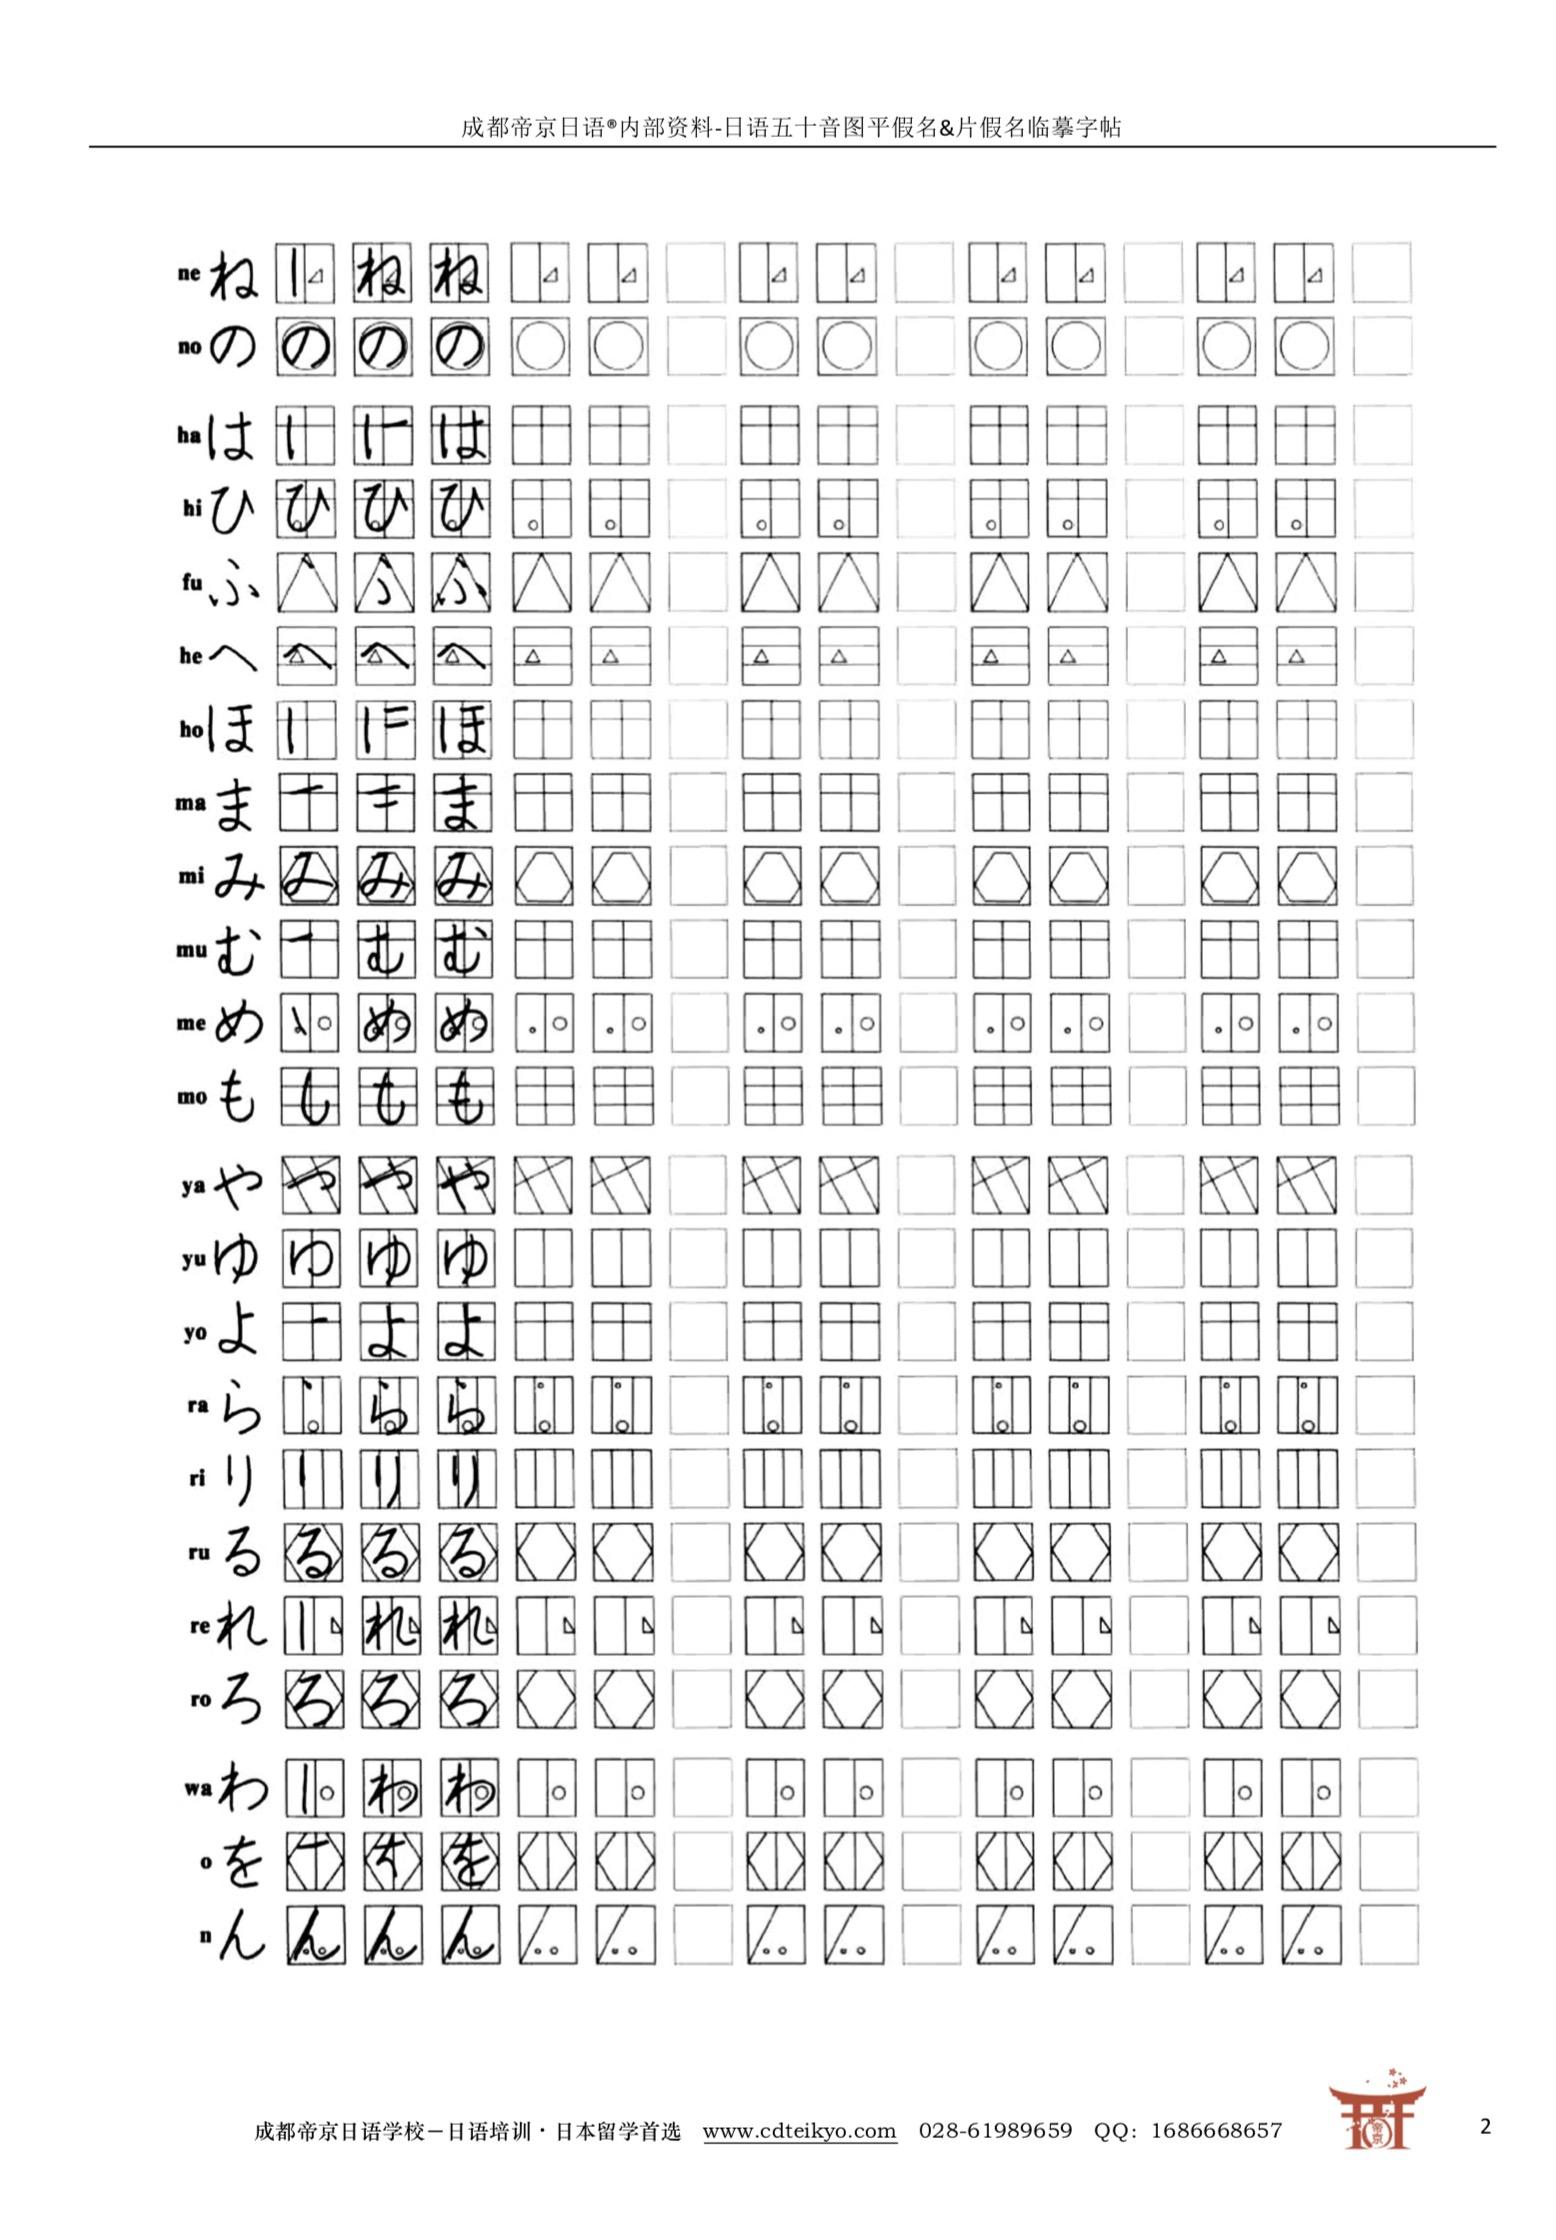 日语五十音图的手写体是怎样的?怎样才算好看? 